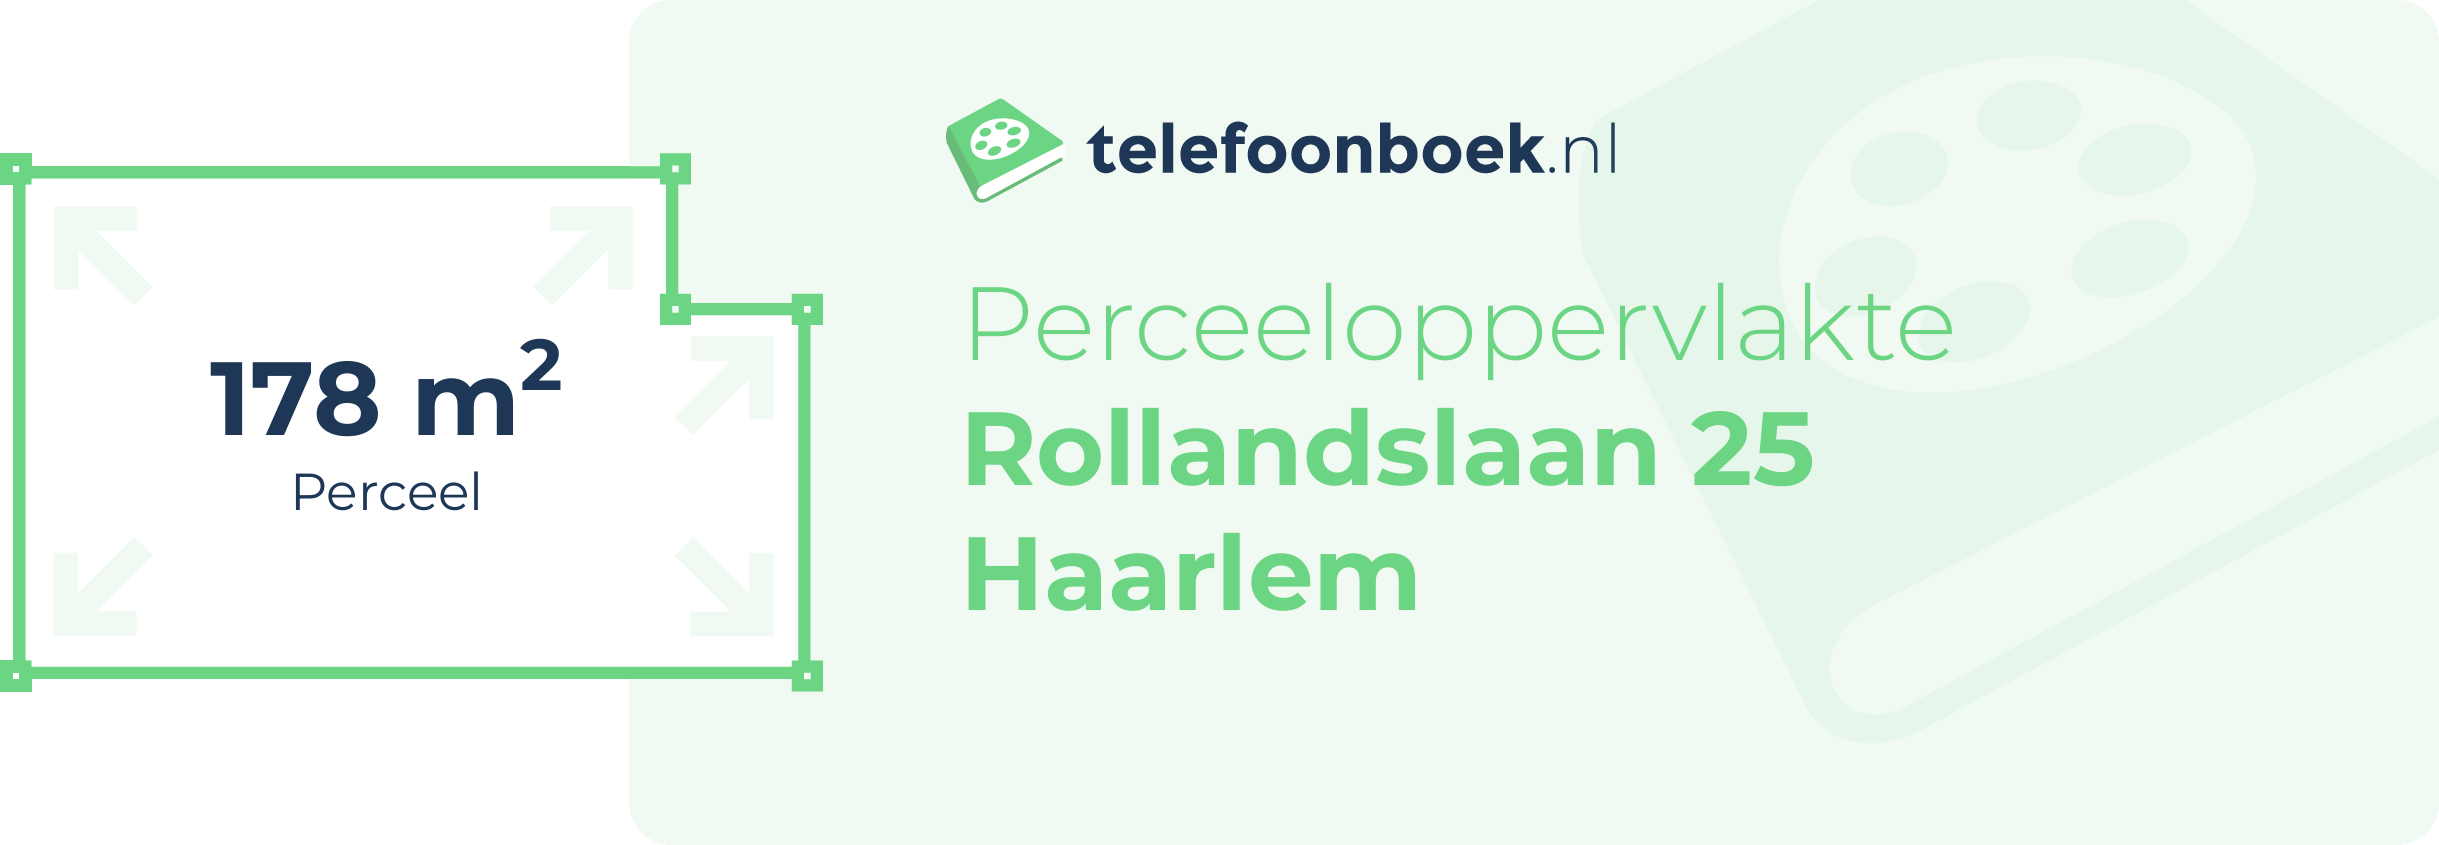 Perceeloppervlakte Rollandslaan 25 Haarlem